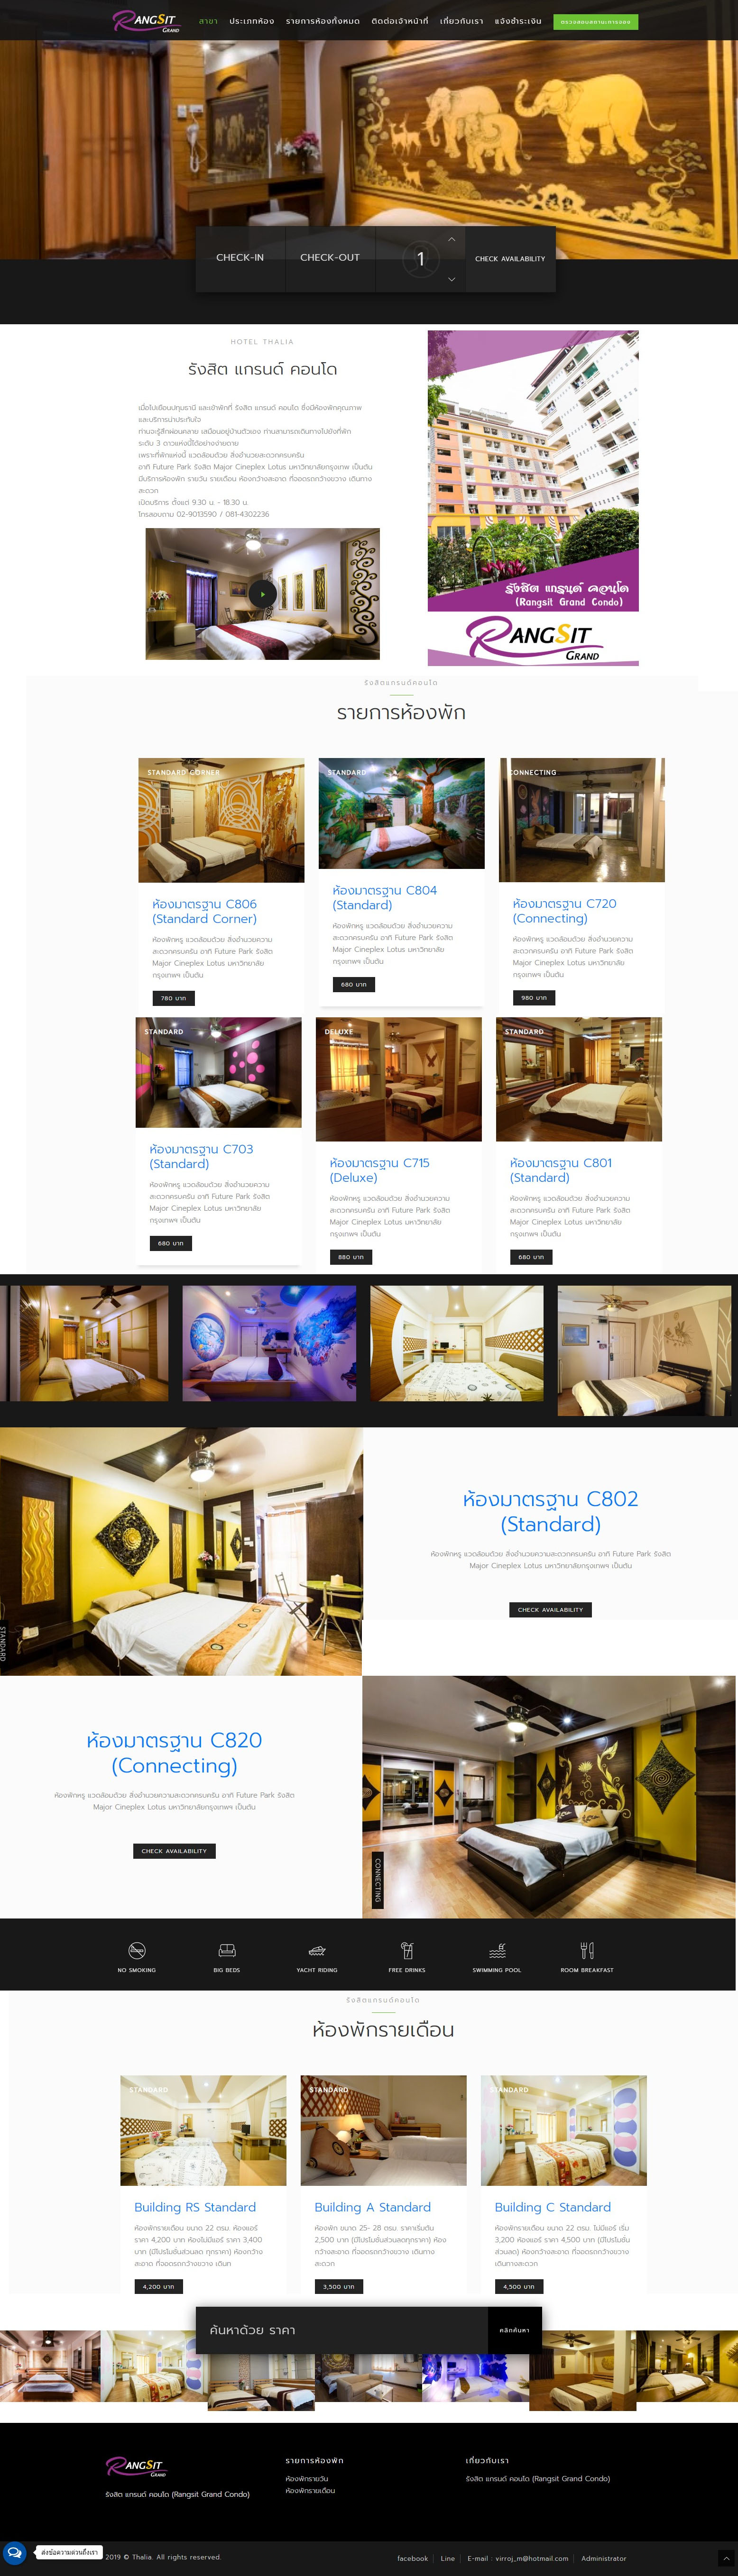 ภาพที่ 2 รับทำเว็บห้องเช่า โรงแรม คอนโด รีสอร์ท อพาร์ทเมนท์ อาคารพาณิชย์ ทาวน์เฮ้าส์